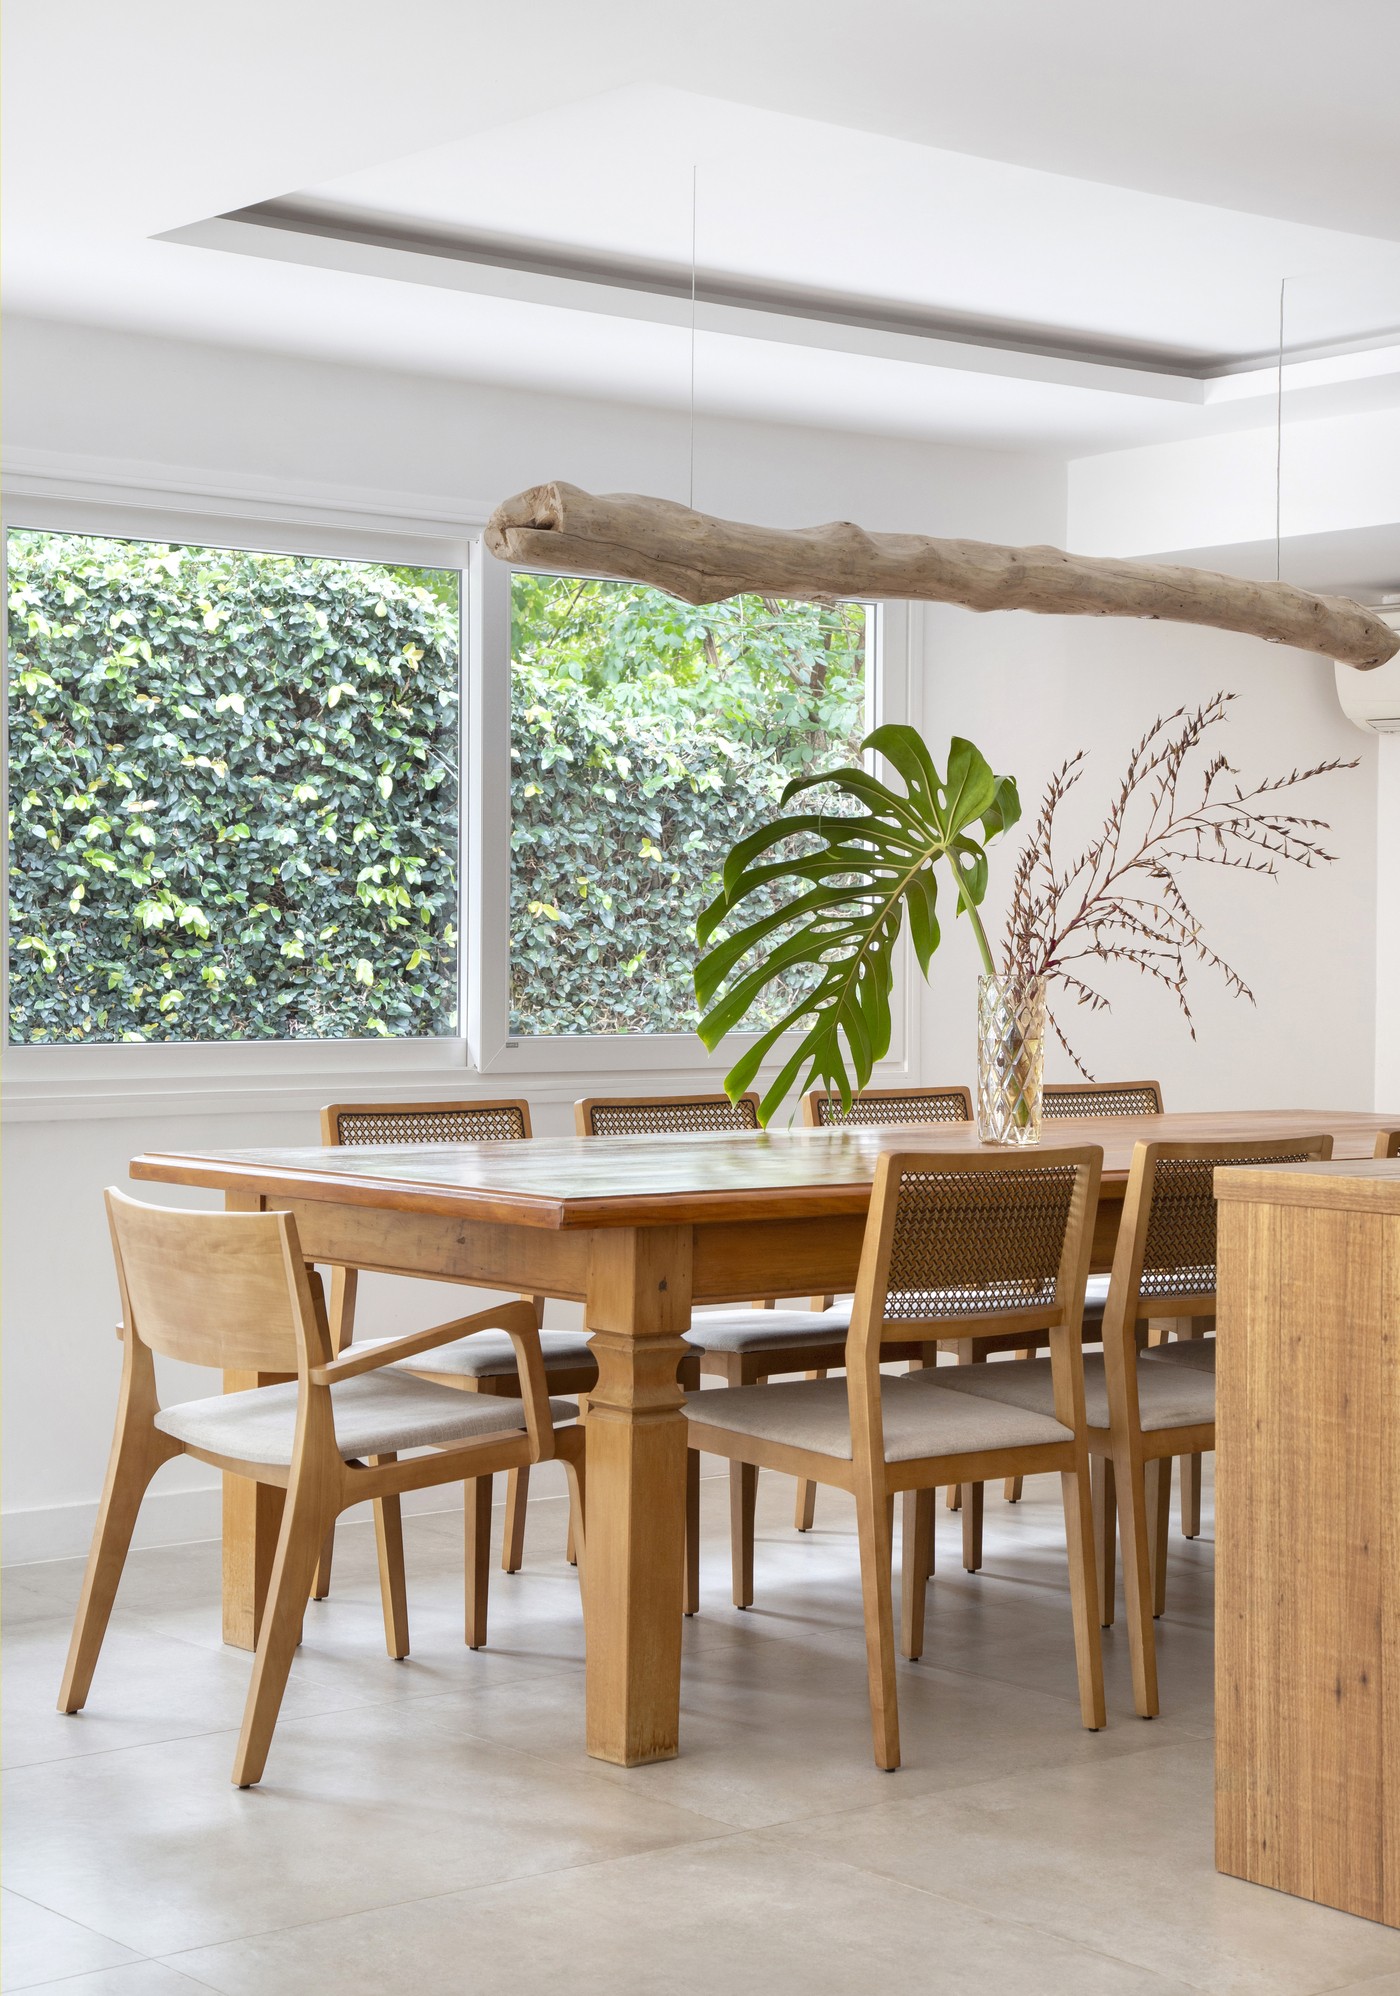 Décor do dia: sala de jantar com pé-direito duplo emoldura a natureza (Foto: Yorran Nogueira )